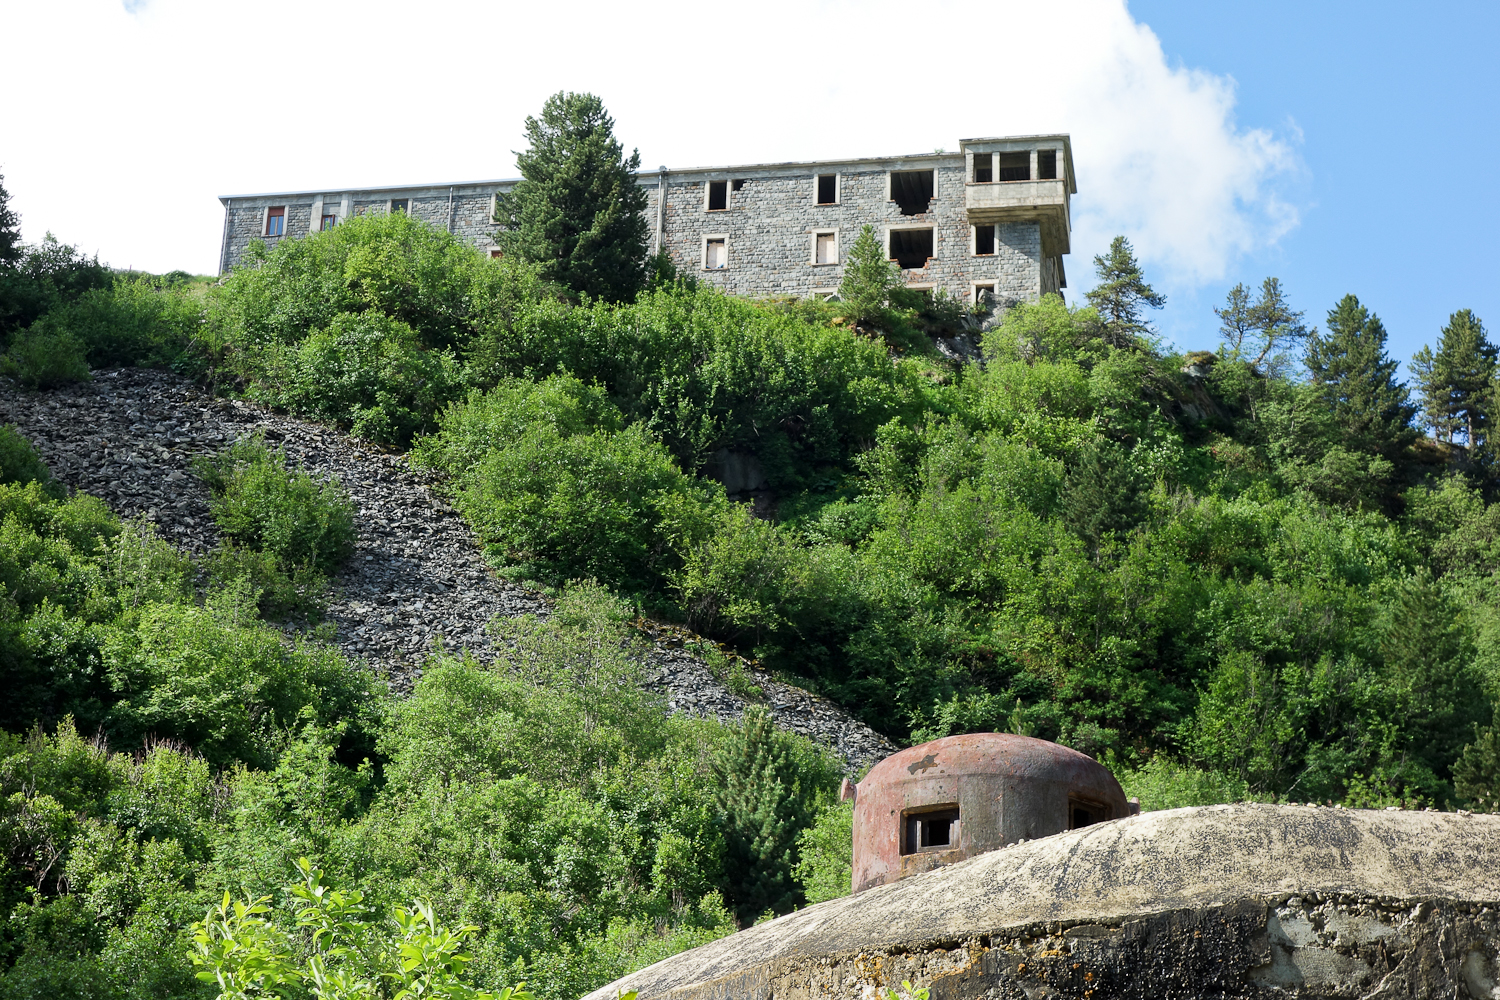 Ligne Maginot - LAVOIR - (Ouvrage d'artillerie) - Entrée munitions
La cloche GFM dominée par le casernement du temps de paix